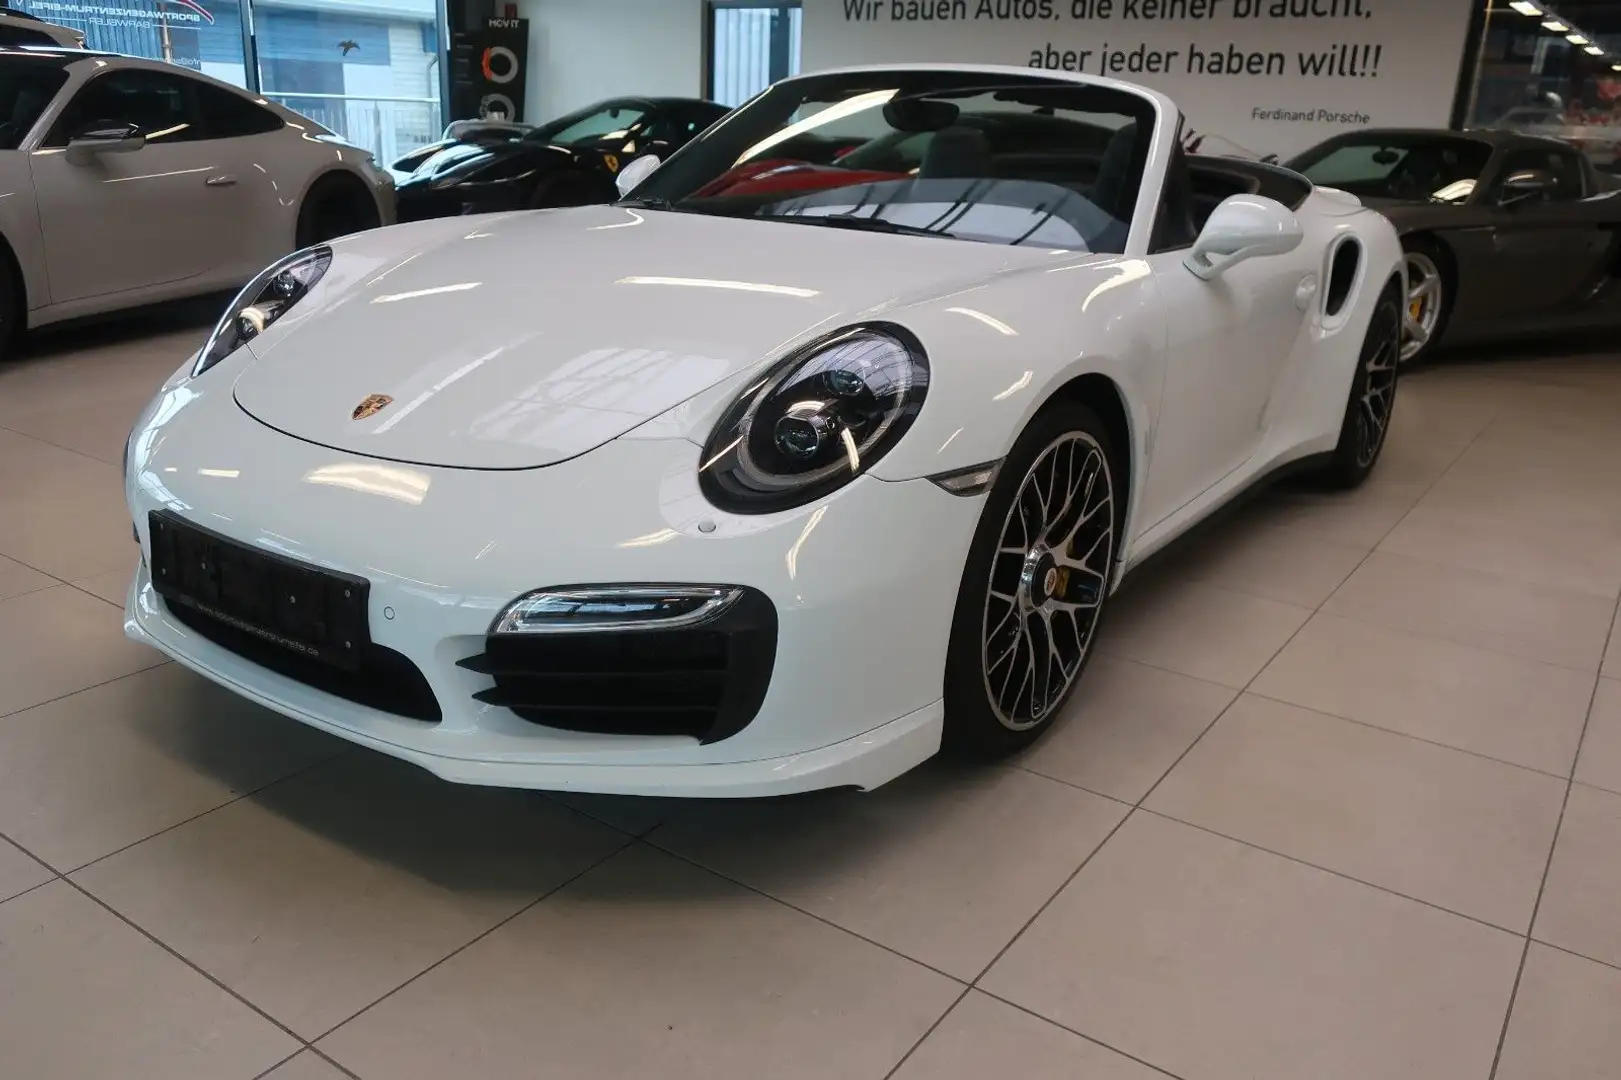 Used Porsche 911 